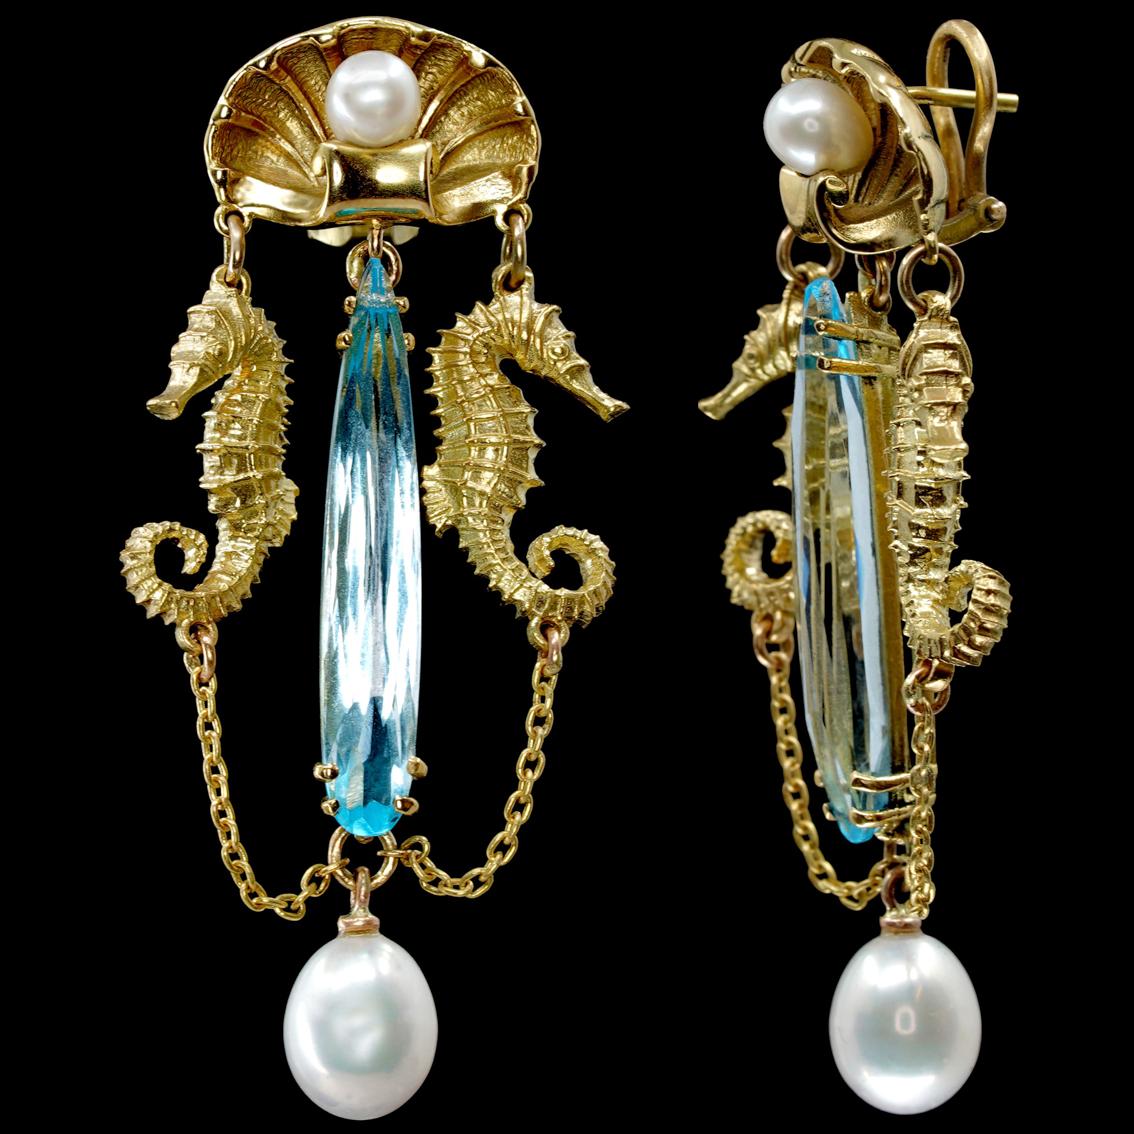 baroque jewelry